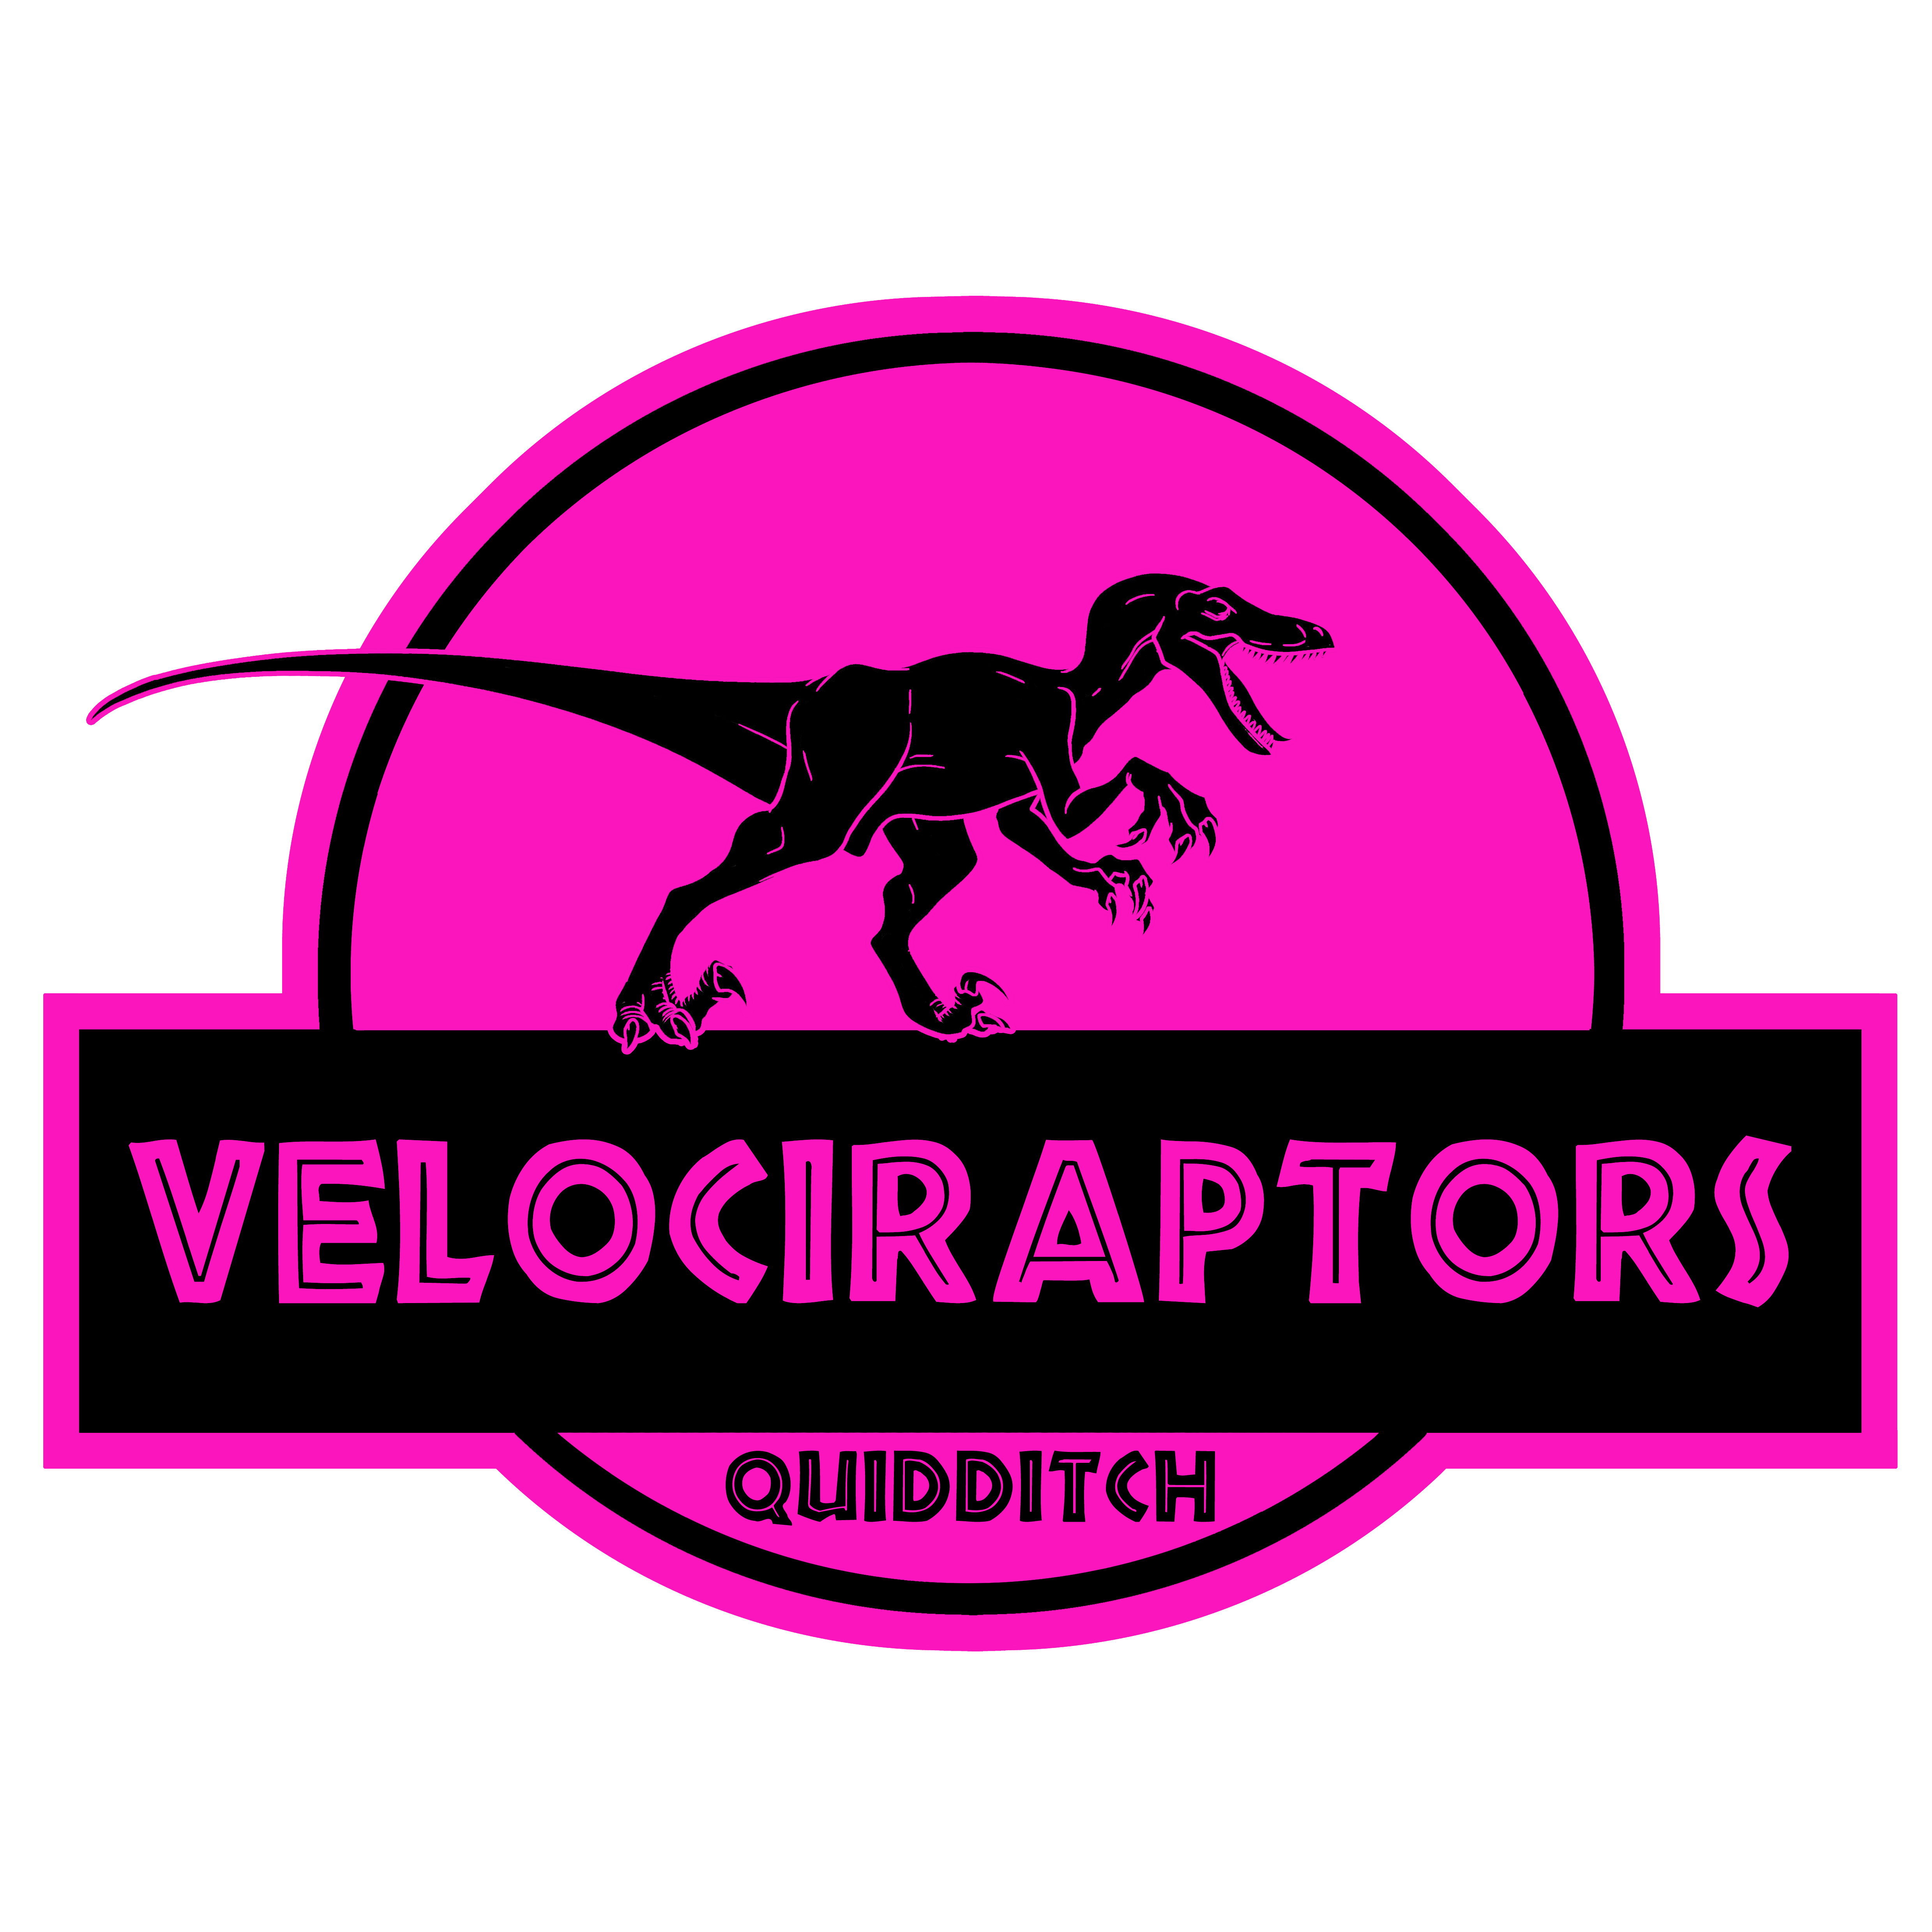 Velociraptors Quidditch Club logo